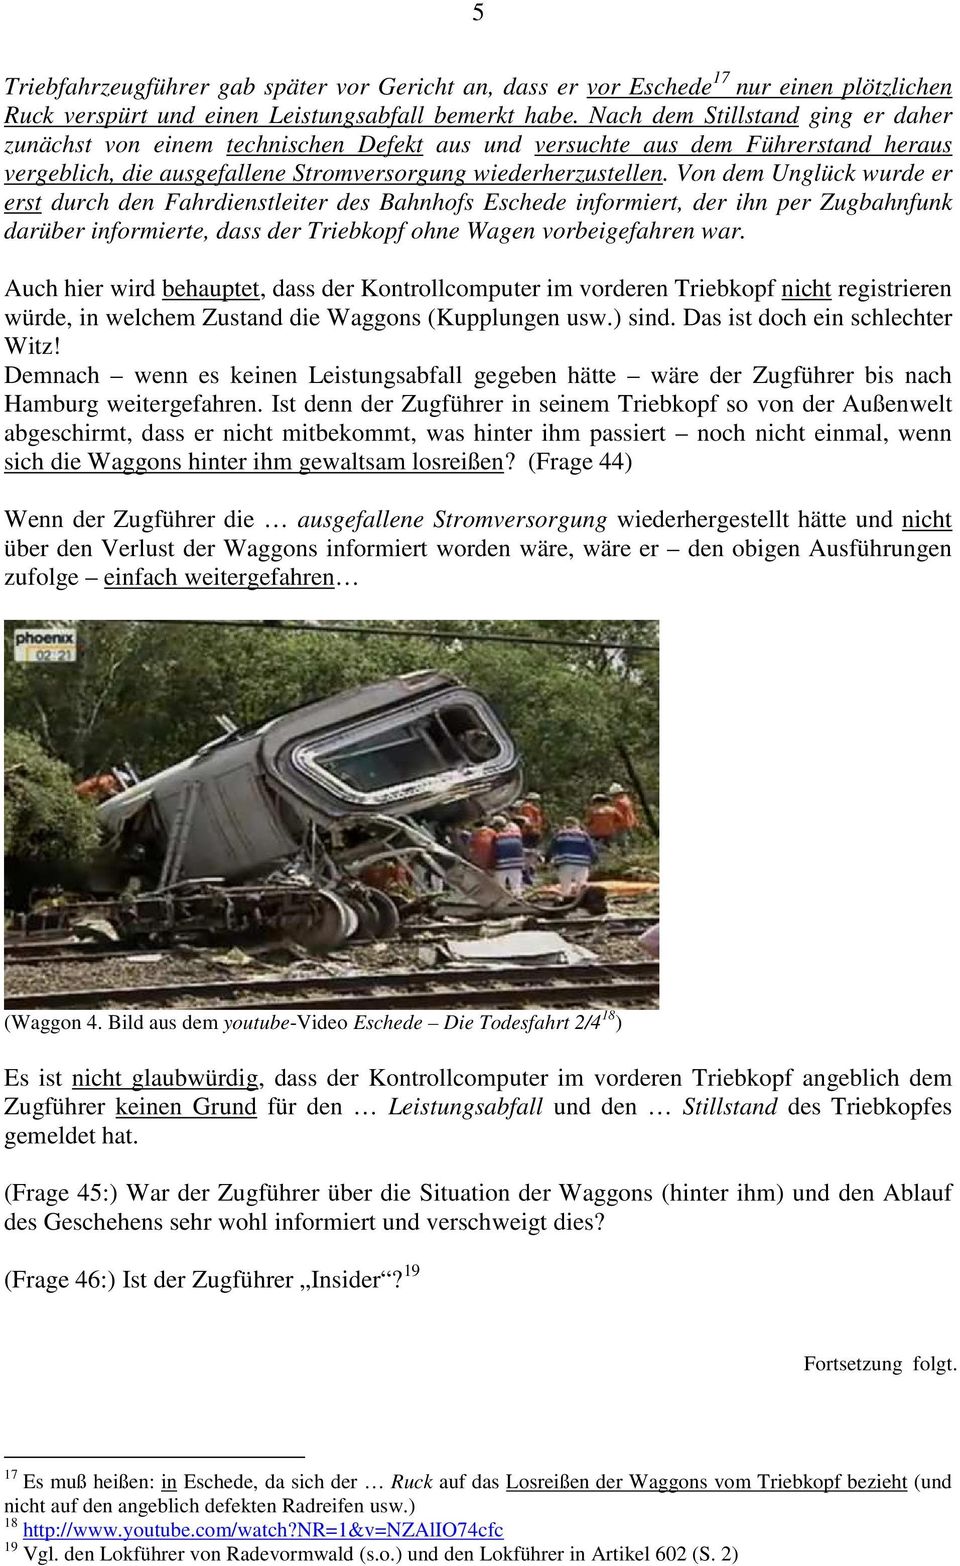 Von dem Unglück wurde er erst durch den Fahrdienstleiter des Bahnhofs Eschede informiert, der ihn per Zugbahnfunk darüber informierte, dass der Triebkopf ohne Wagen vorbeigefahren war.